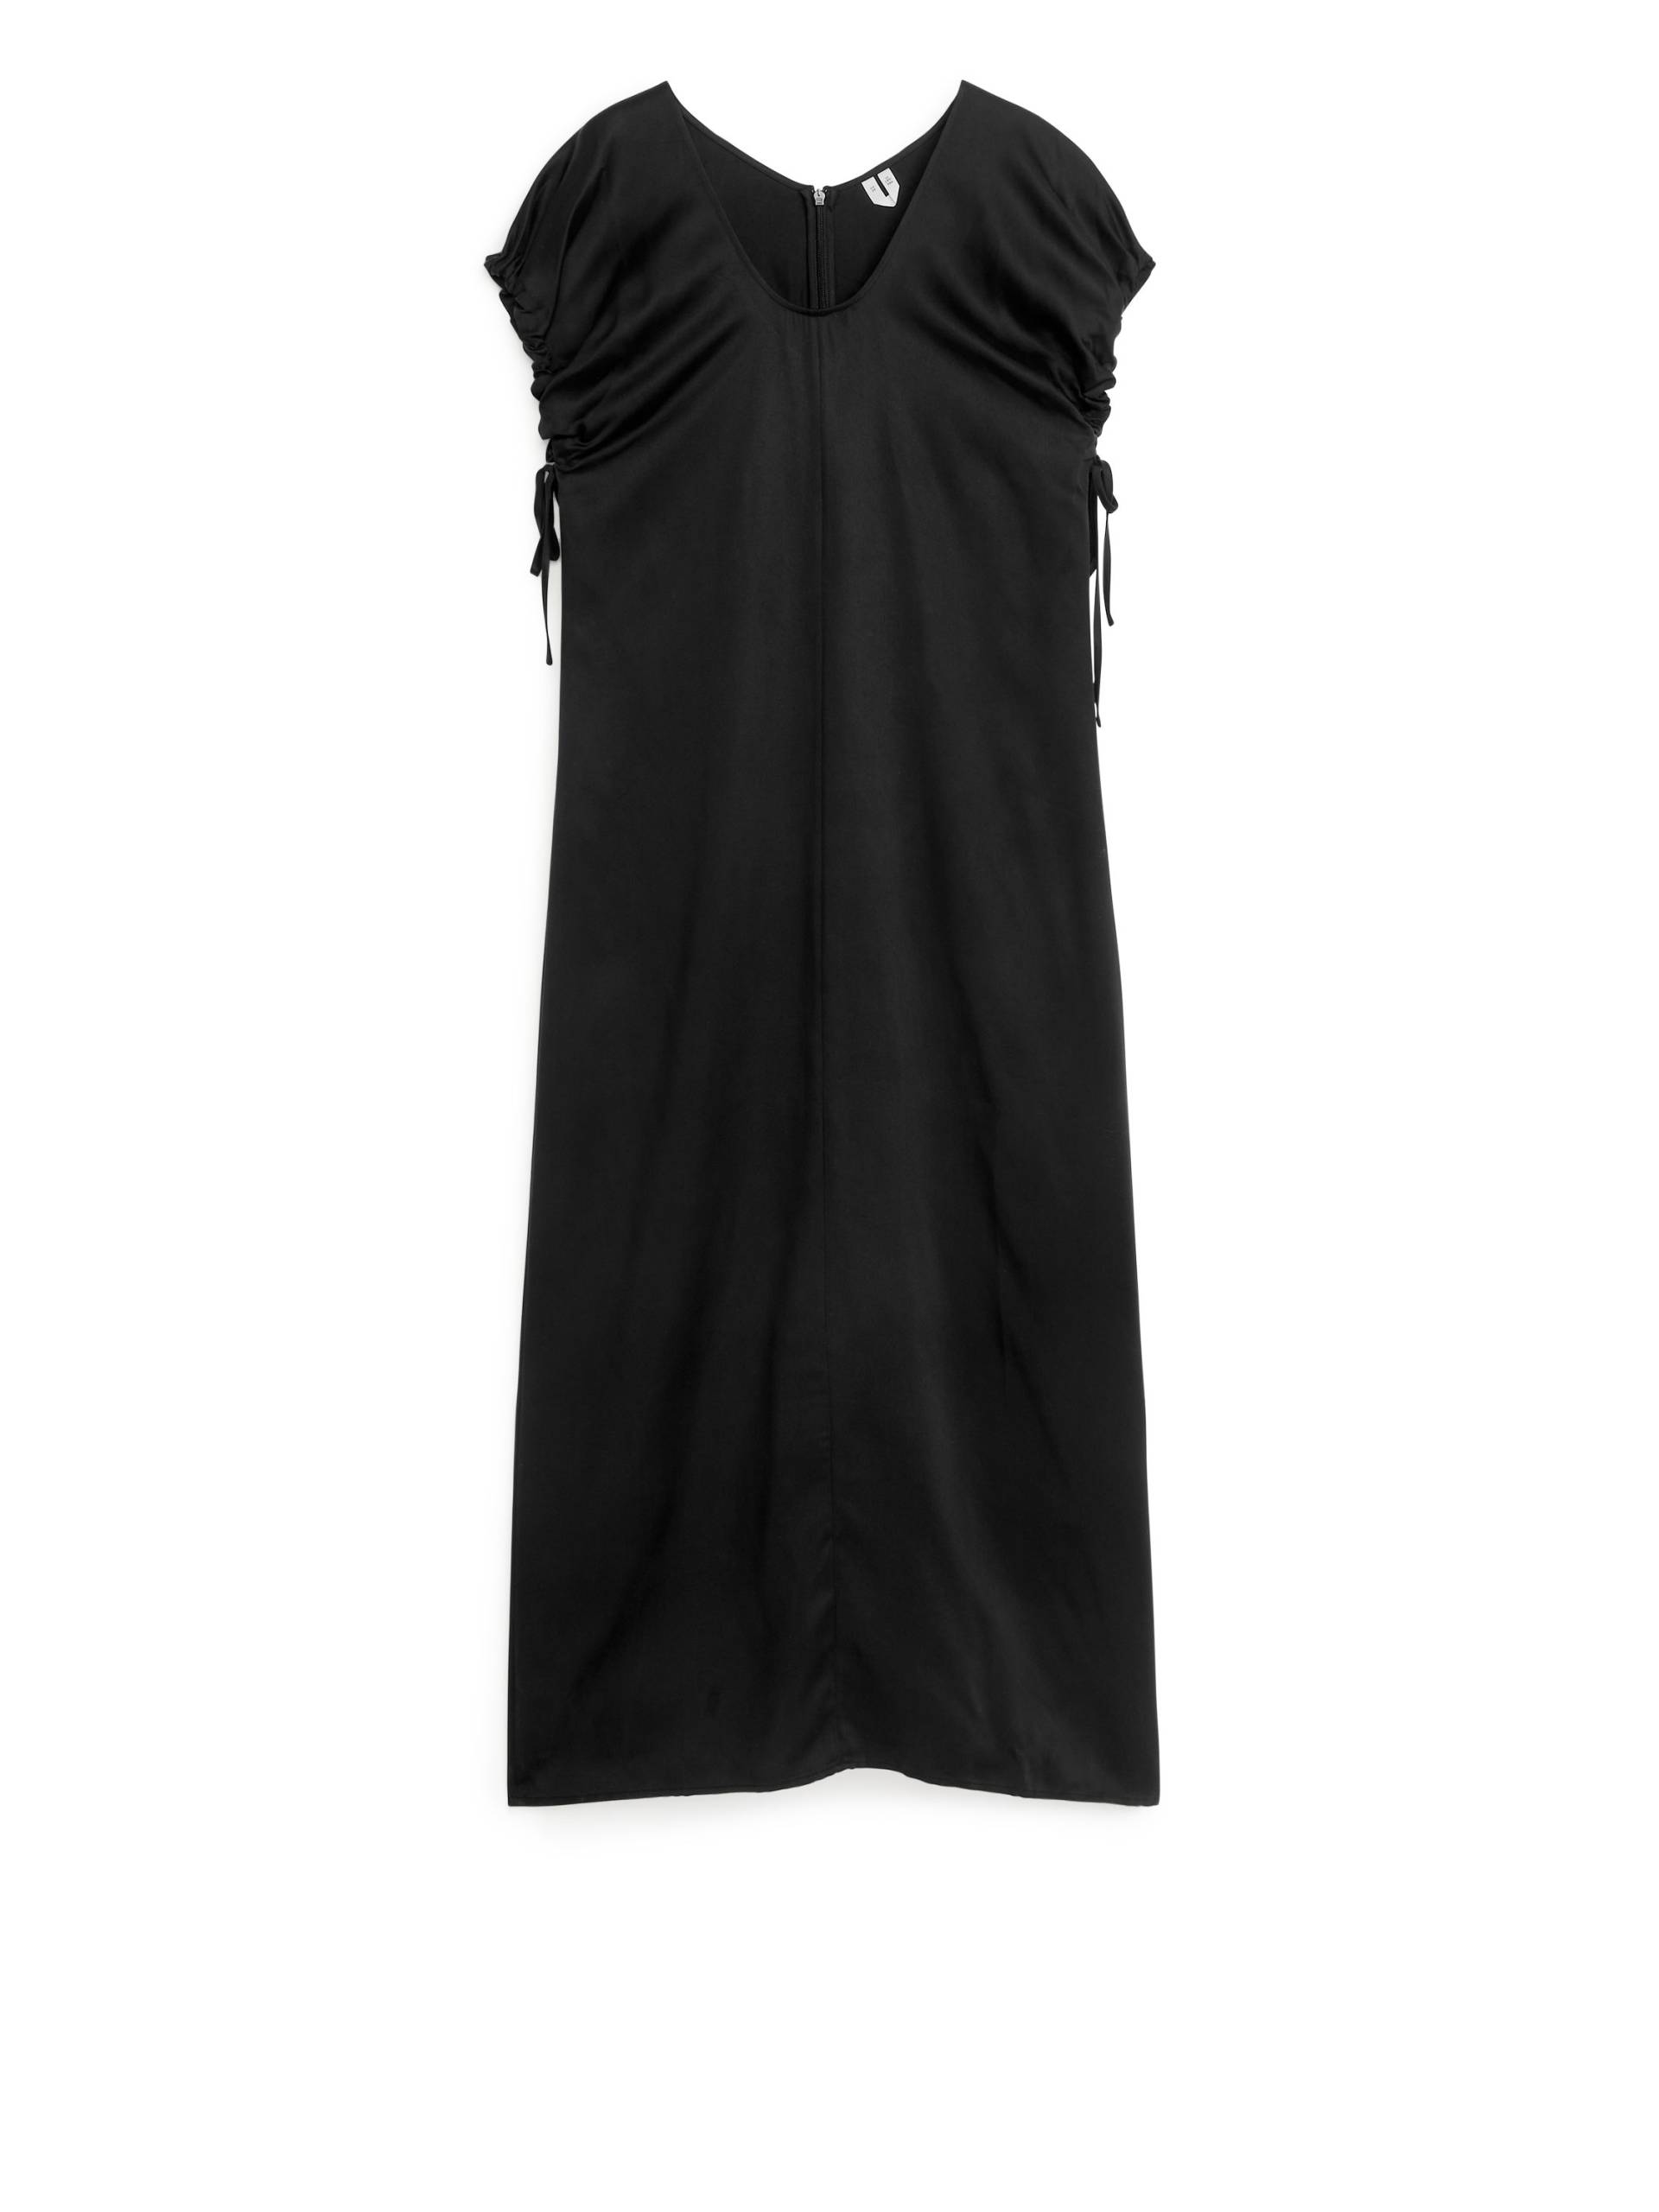 Arket Kleid aus Lyocell-Mischung Schwarz, Alltagskleider in Größe 44. Farbe: Black von Arket